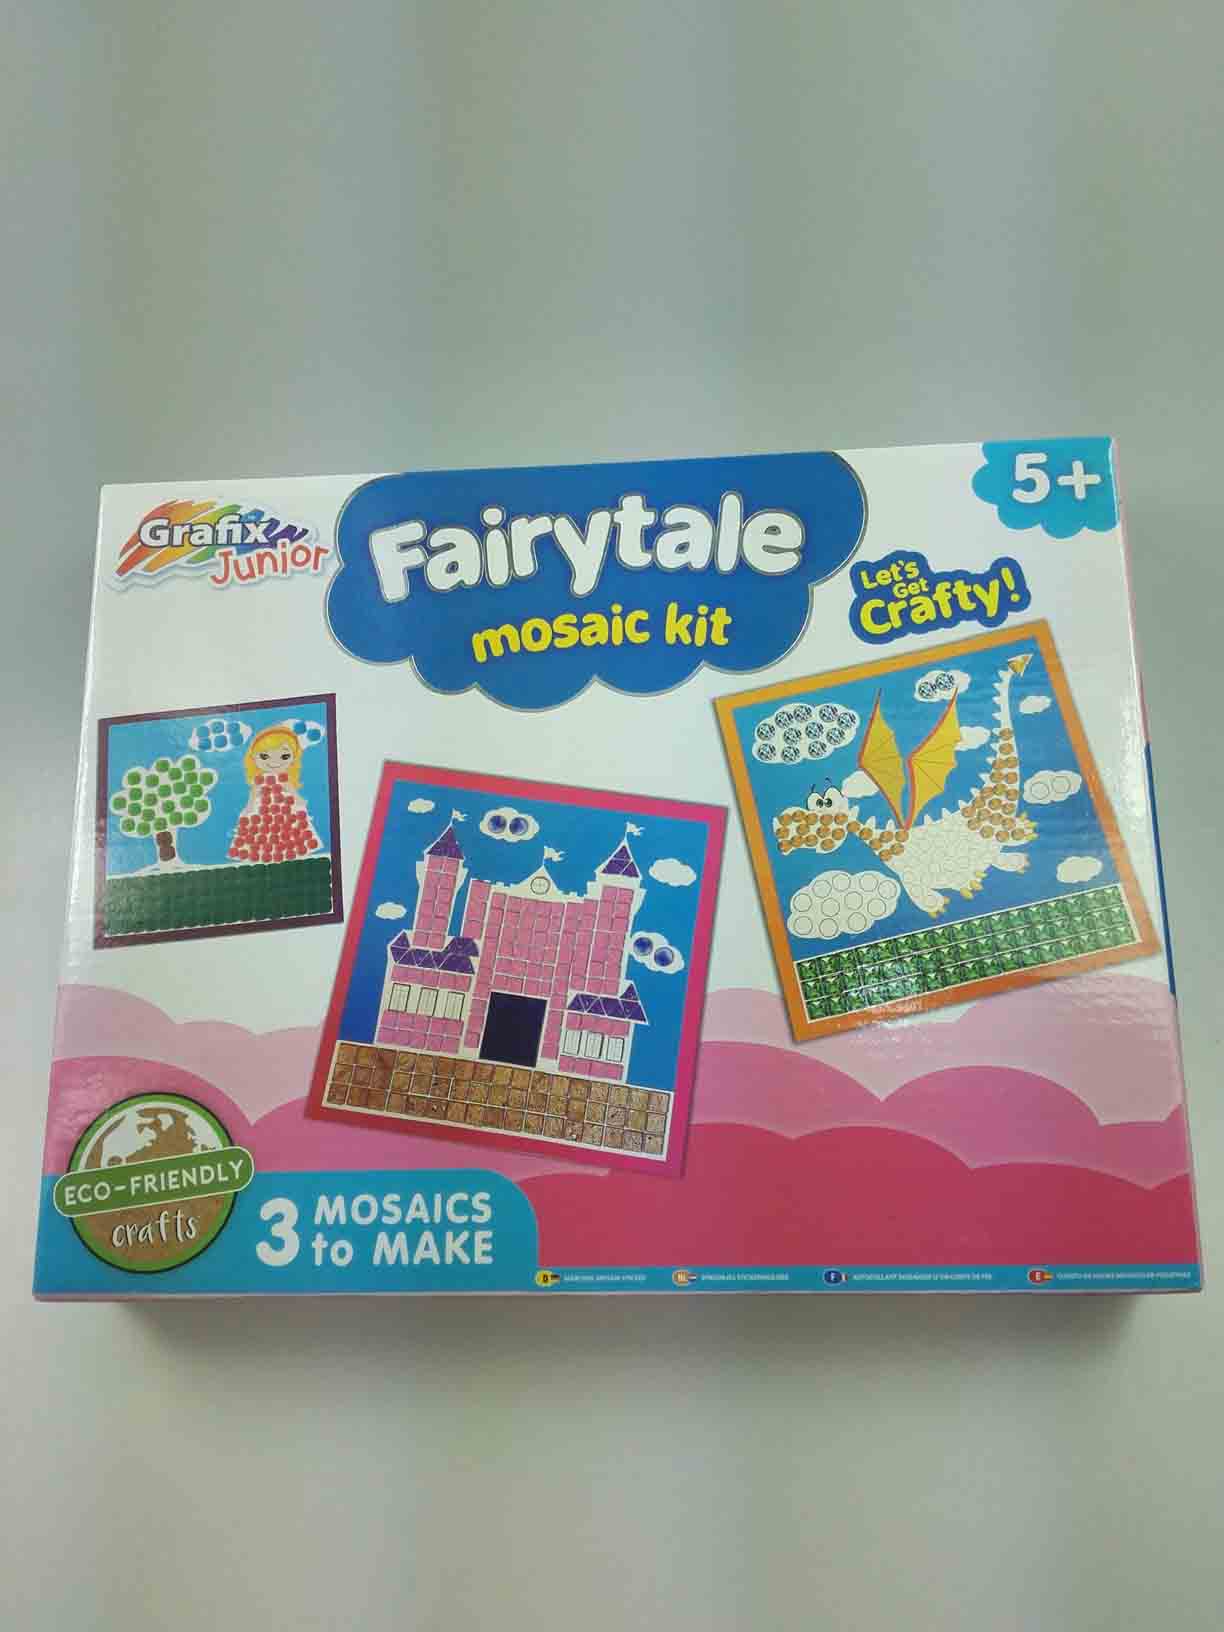 Fairytale mosaic kit